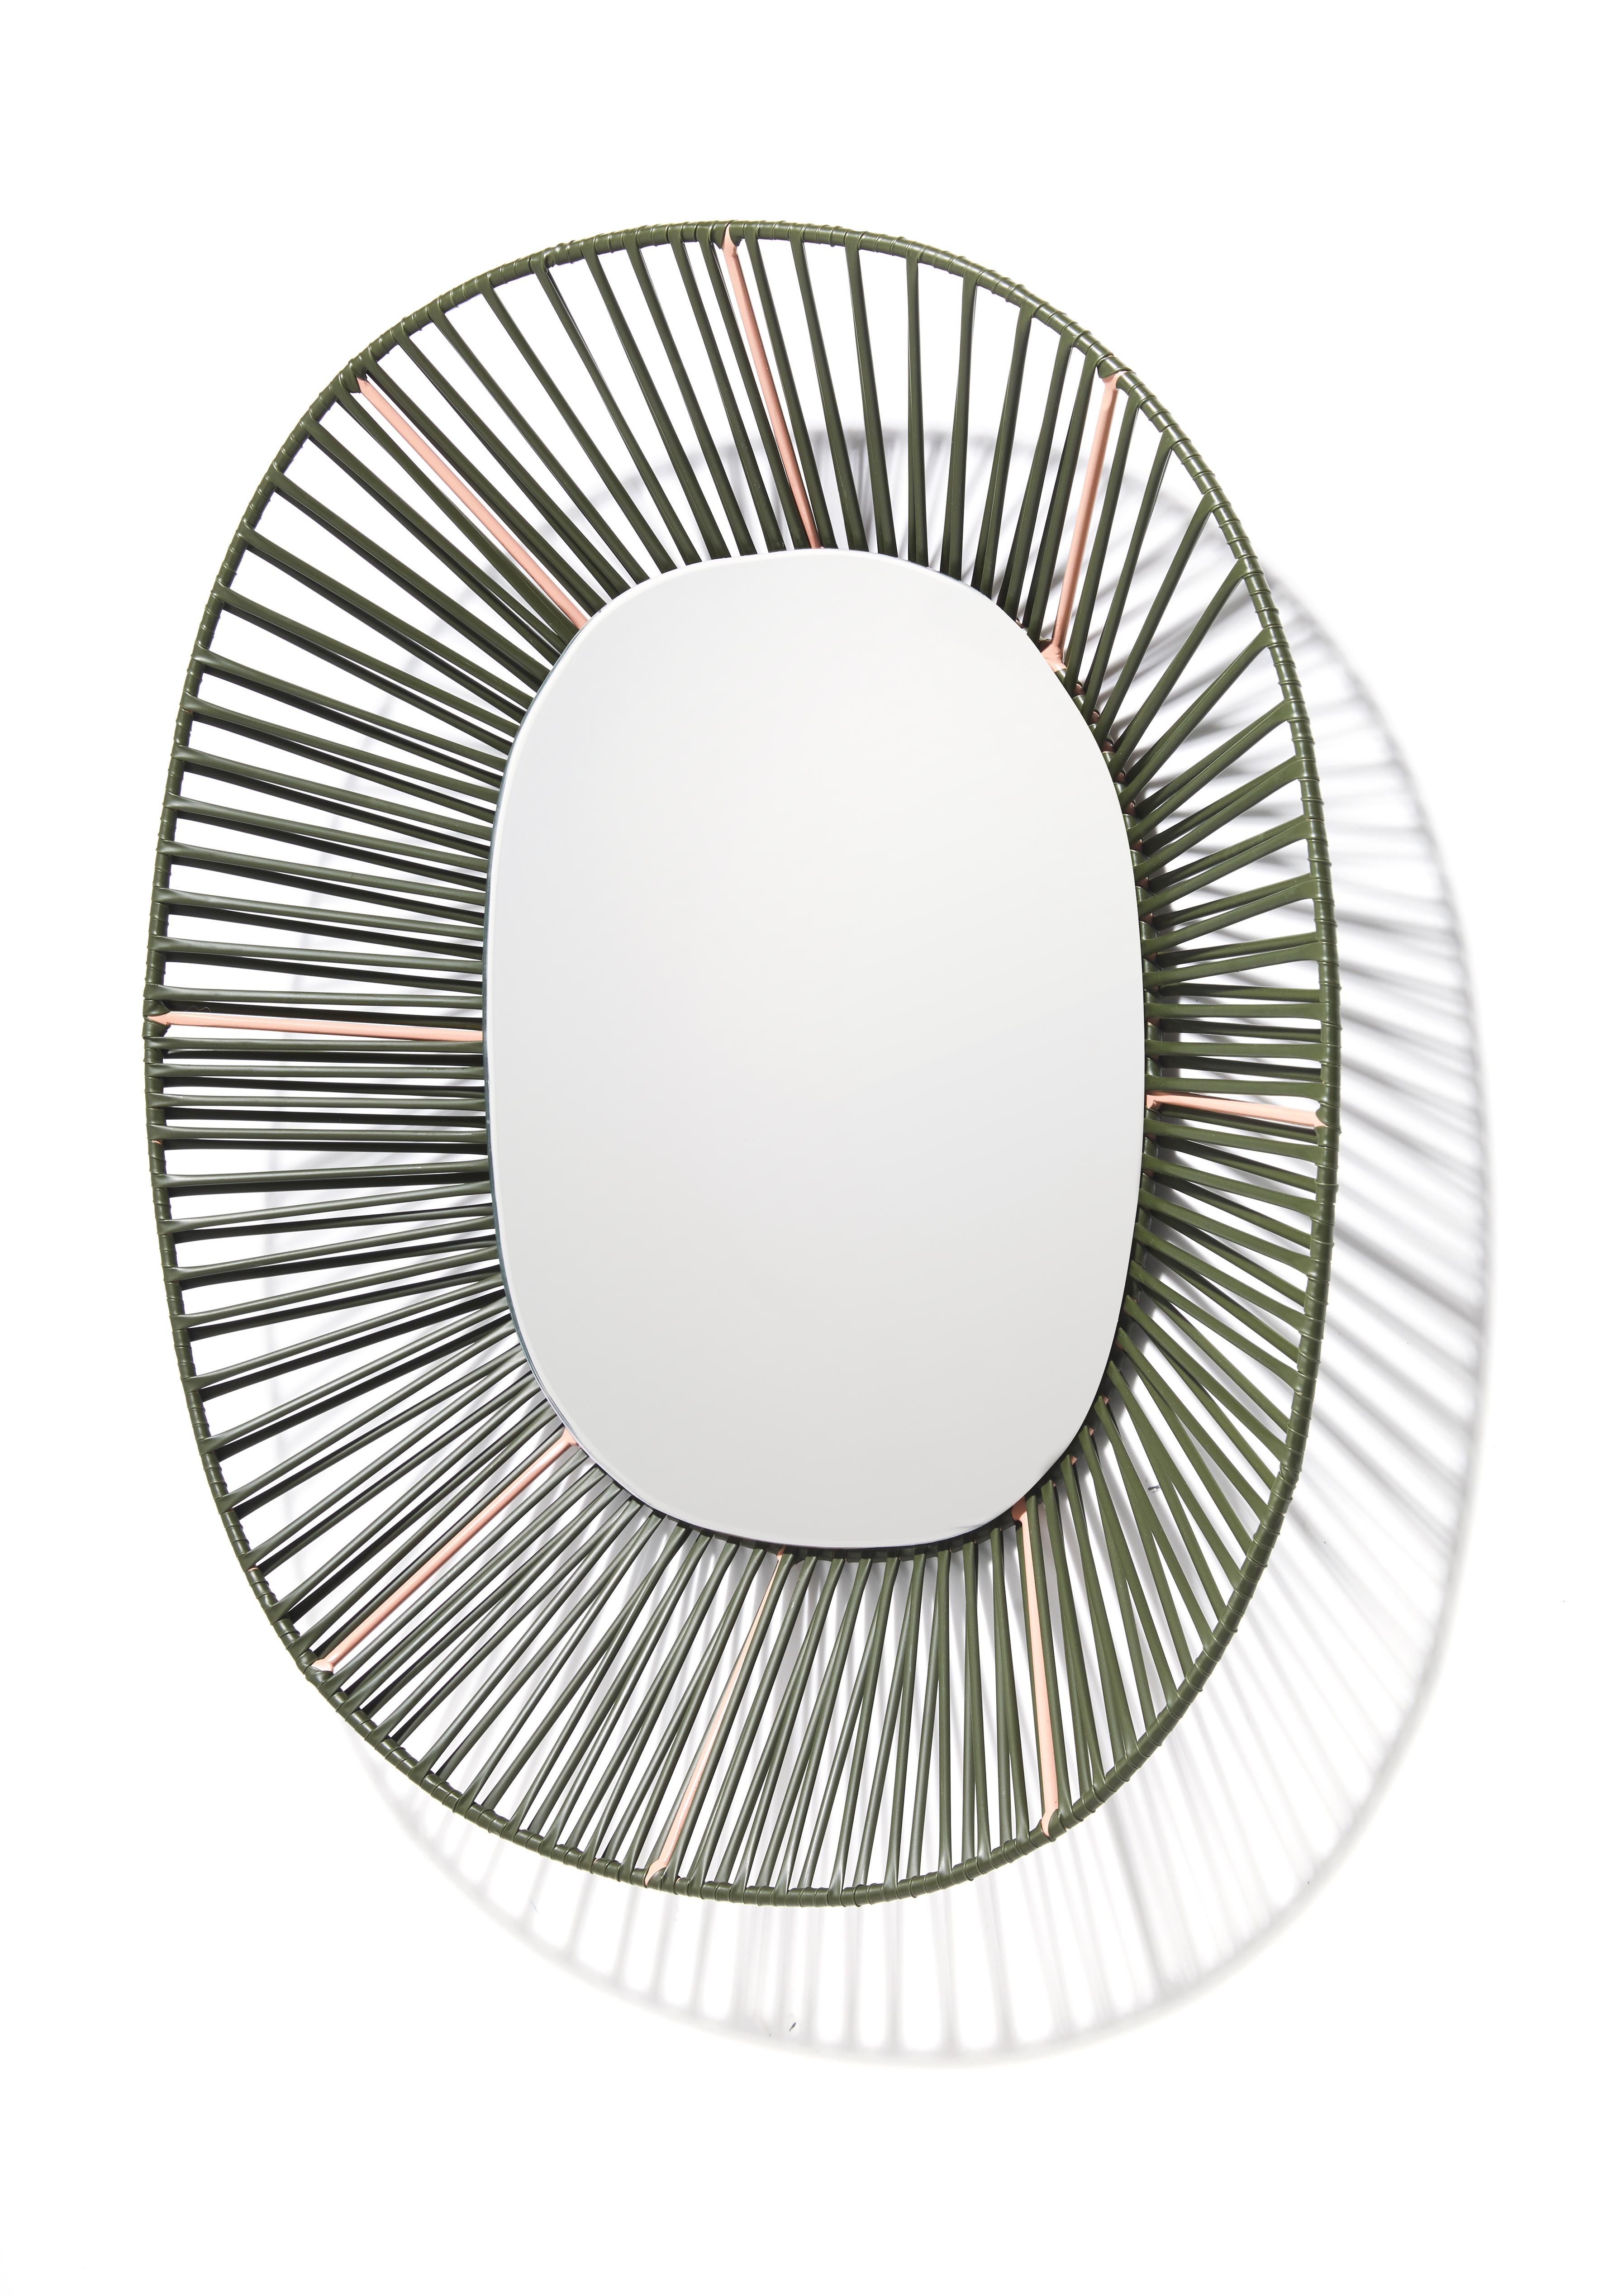 Cesta ovaler spiegel von Pauline Deltour (Pulverbeschichtet) im Angebot